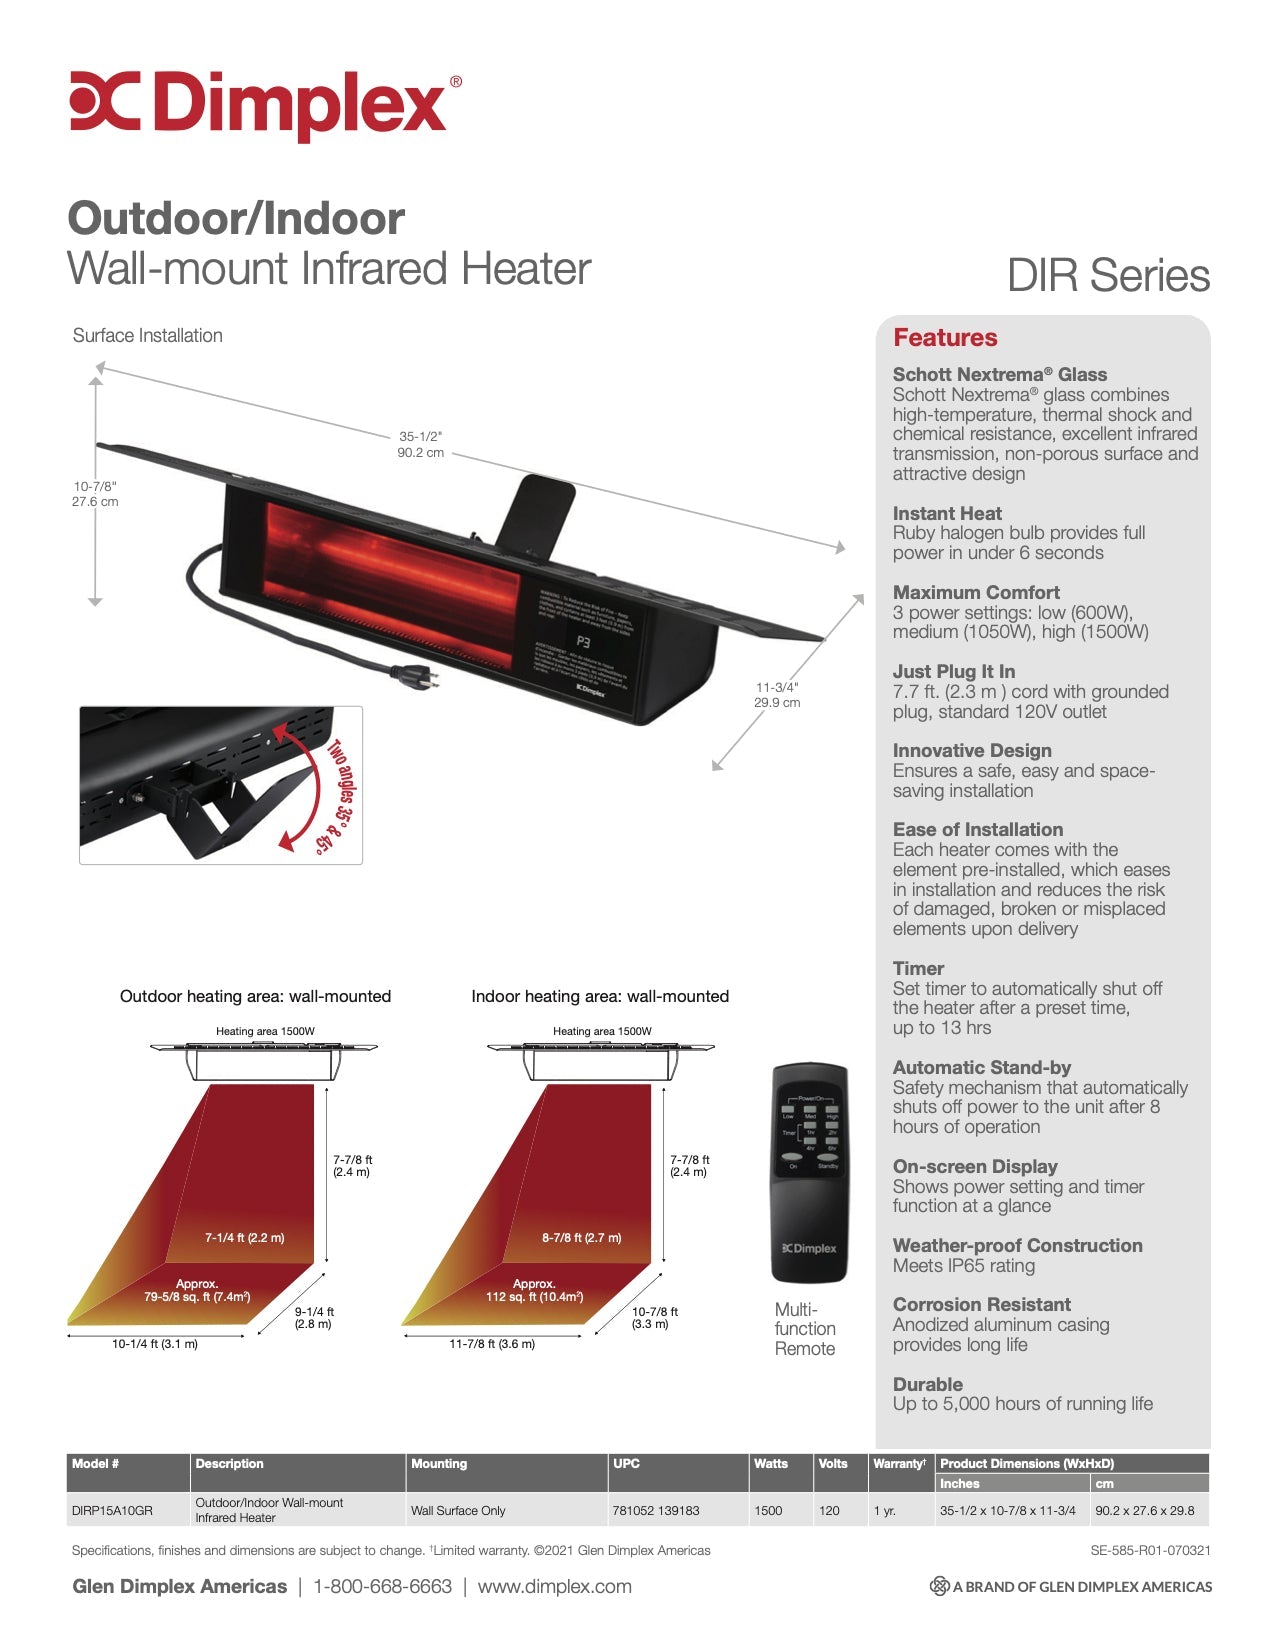 Dimplex Outdoor/Indoor Infared Heater 1500W X-DIRP15A10GR